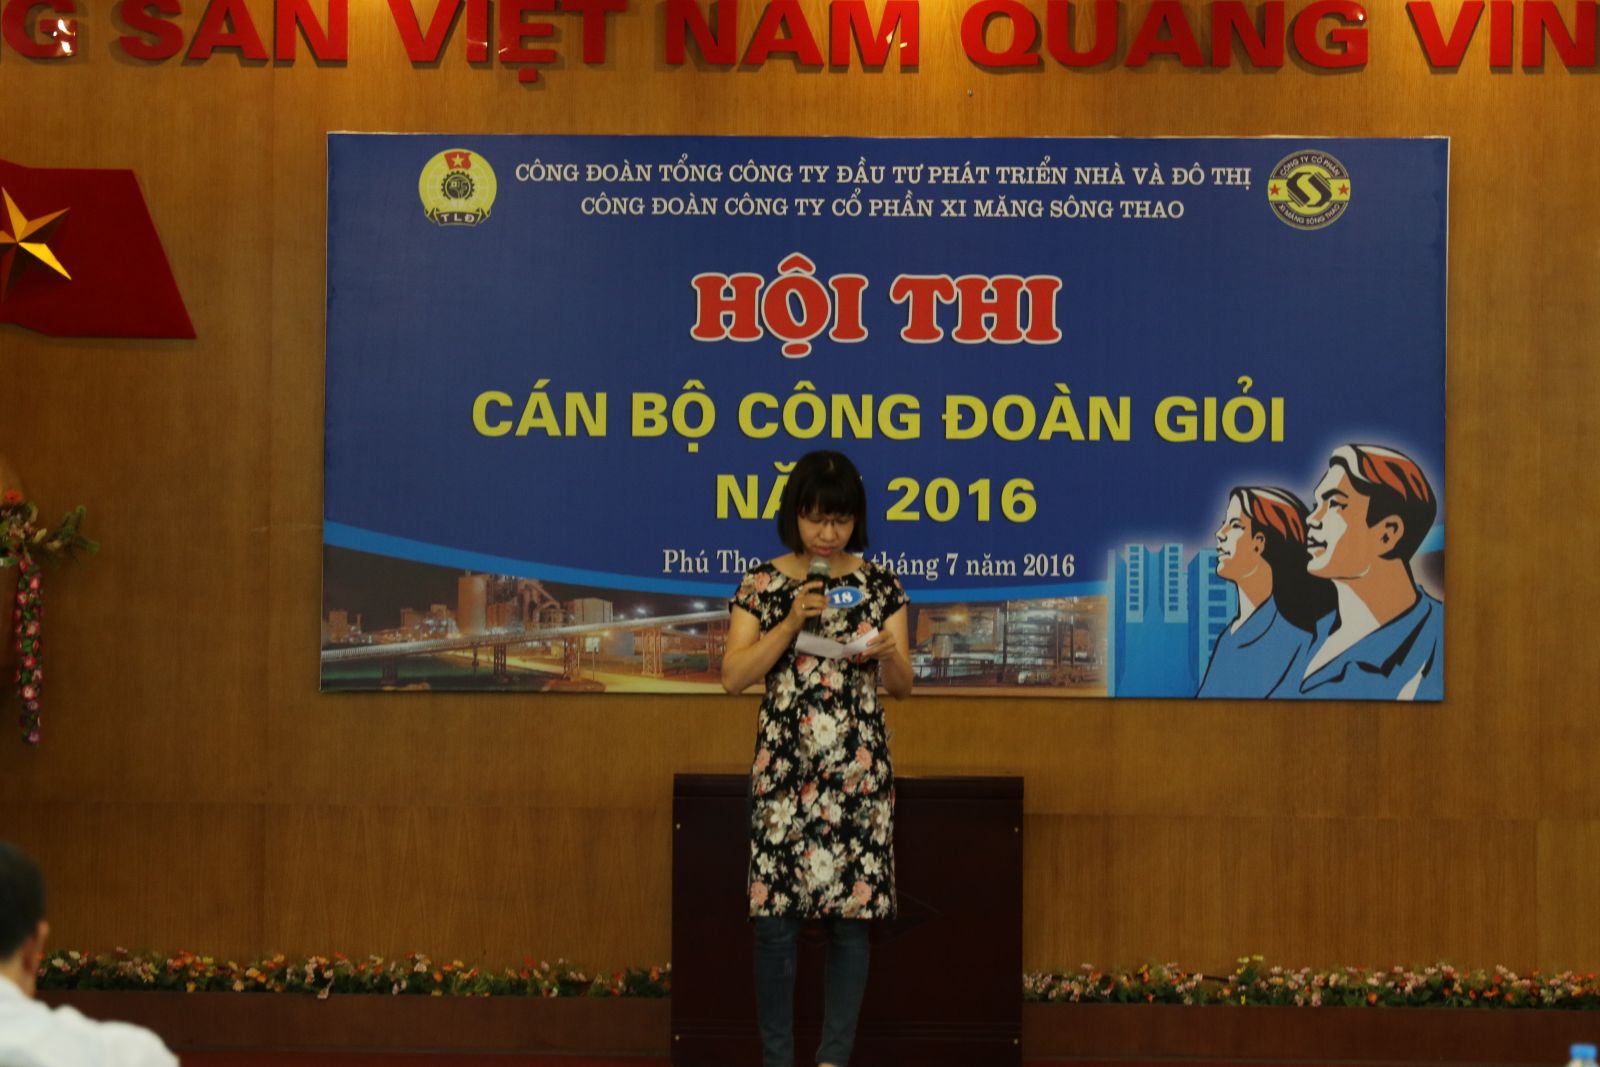 Thí sinh Nguyễn Thị Khánh Ly thực hiện phần thi Ứng xử